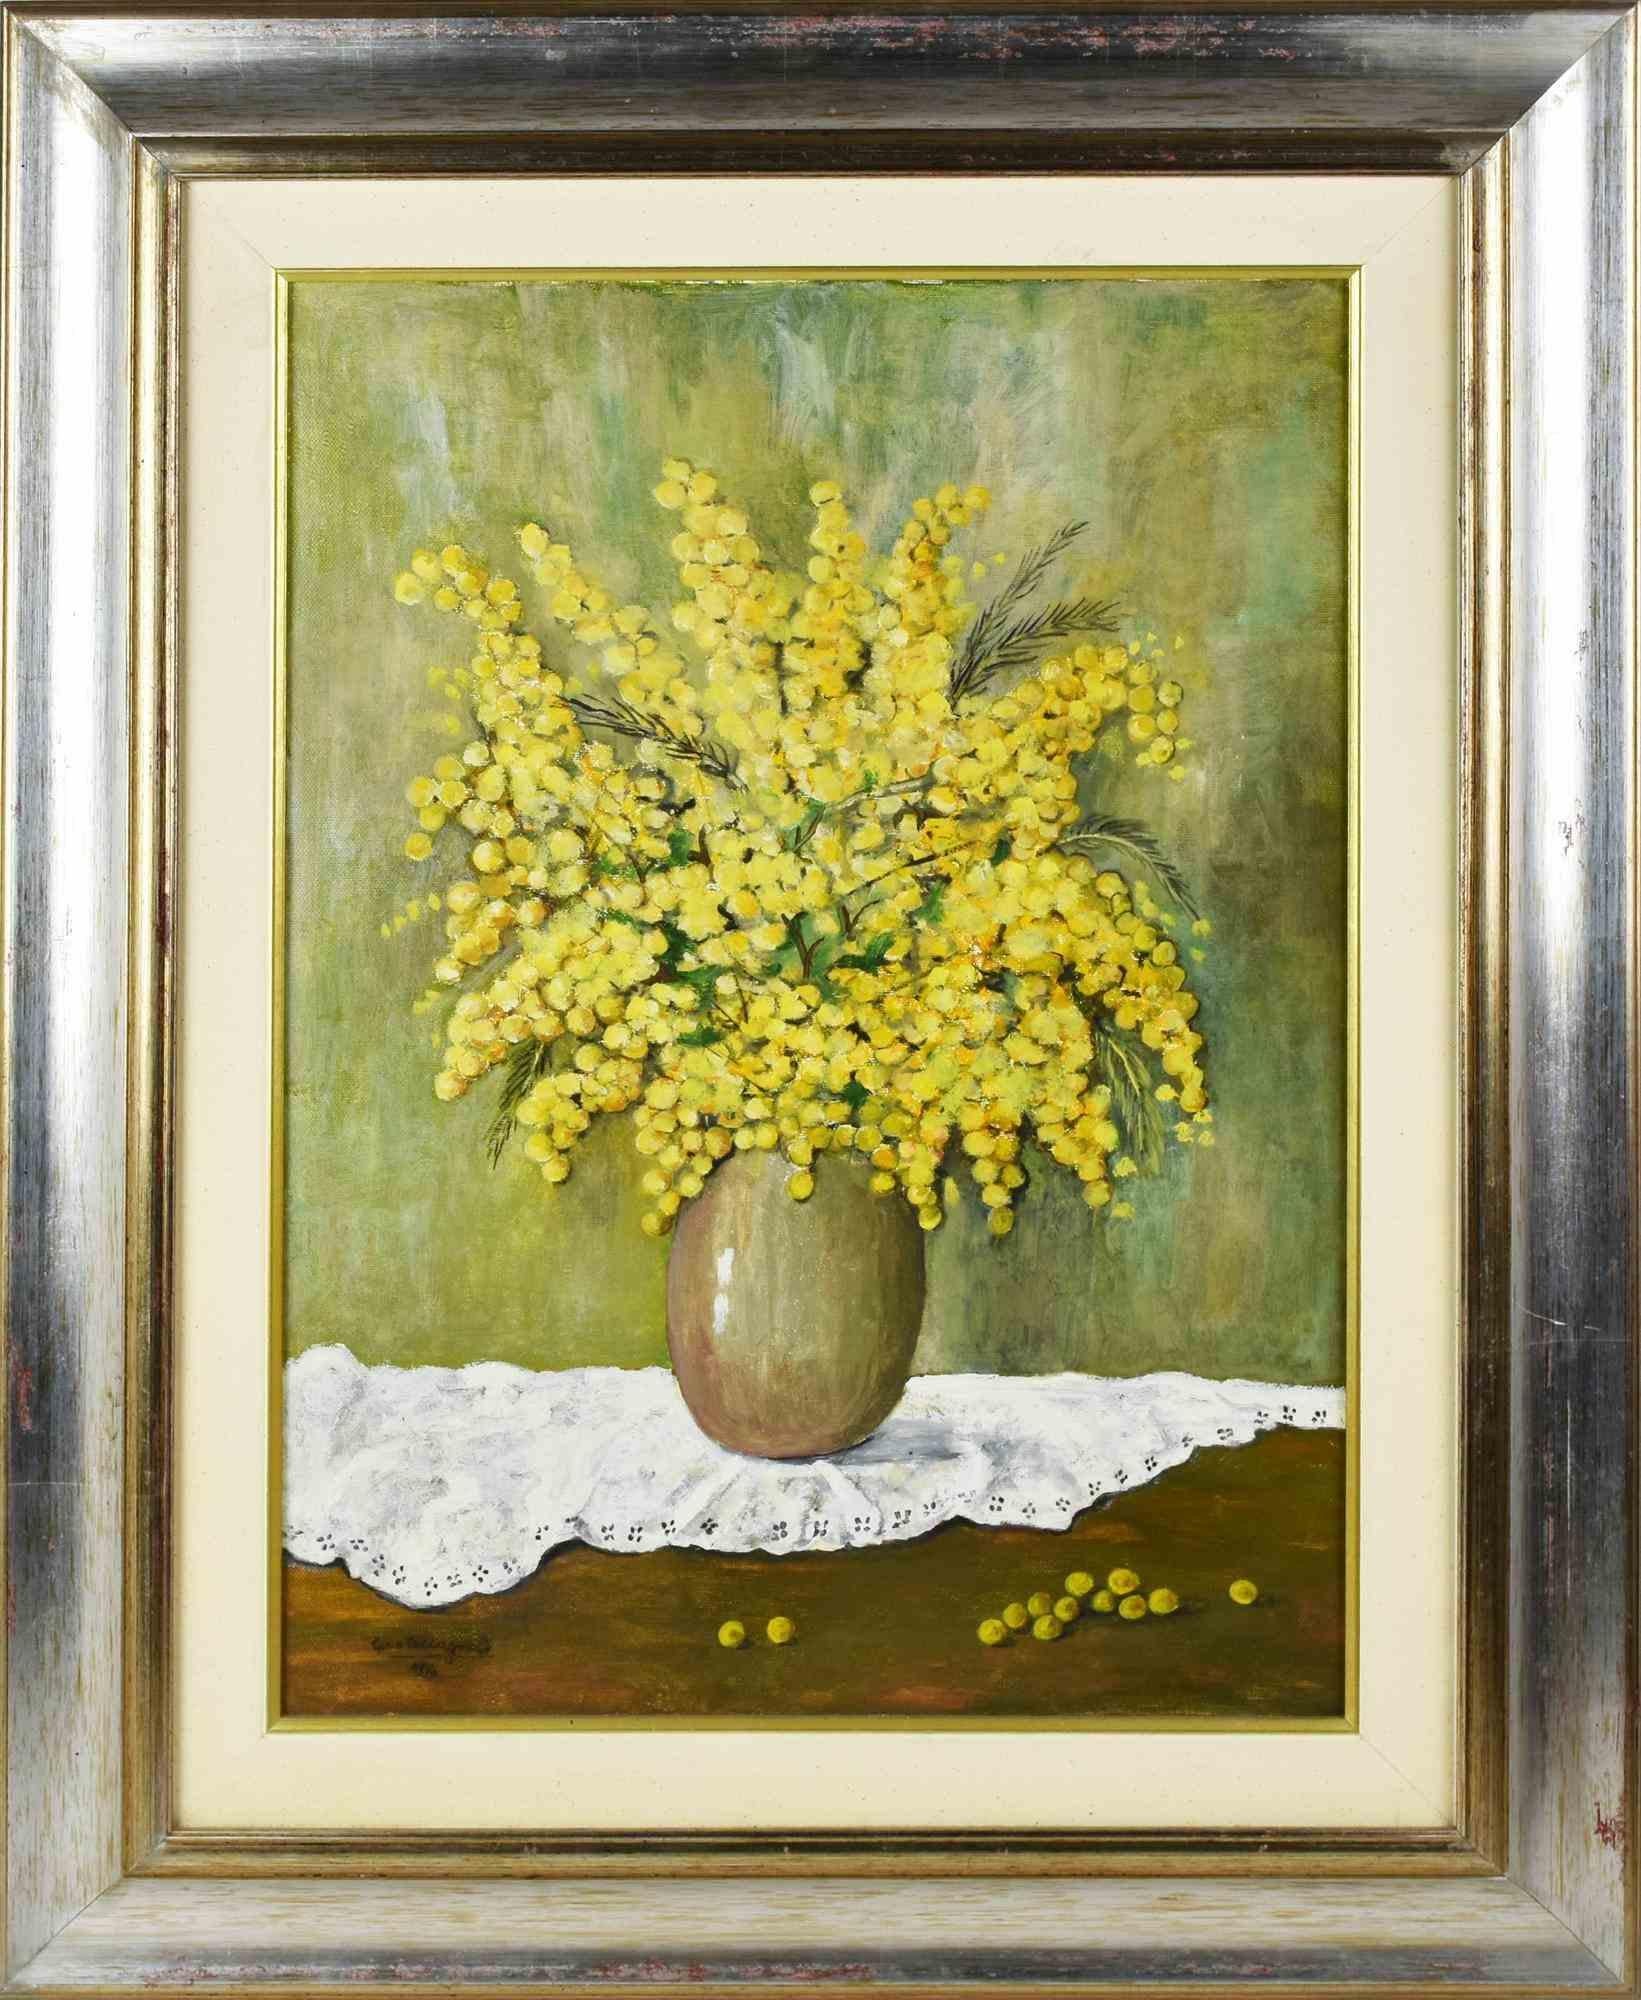 Mimosas ist ein originelles zeitgenössisches Kunstwerk von Gina Ceccagnoli aus dem Jahr 1996.

Acryl-Tempera auf Leinwand.

Handsigniert und datiert am linken unteren Rand

Artit's Atelier auf der Rückseite.

Einschließlich Rahmen.

